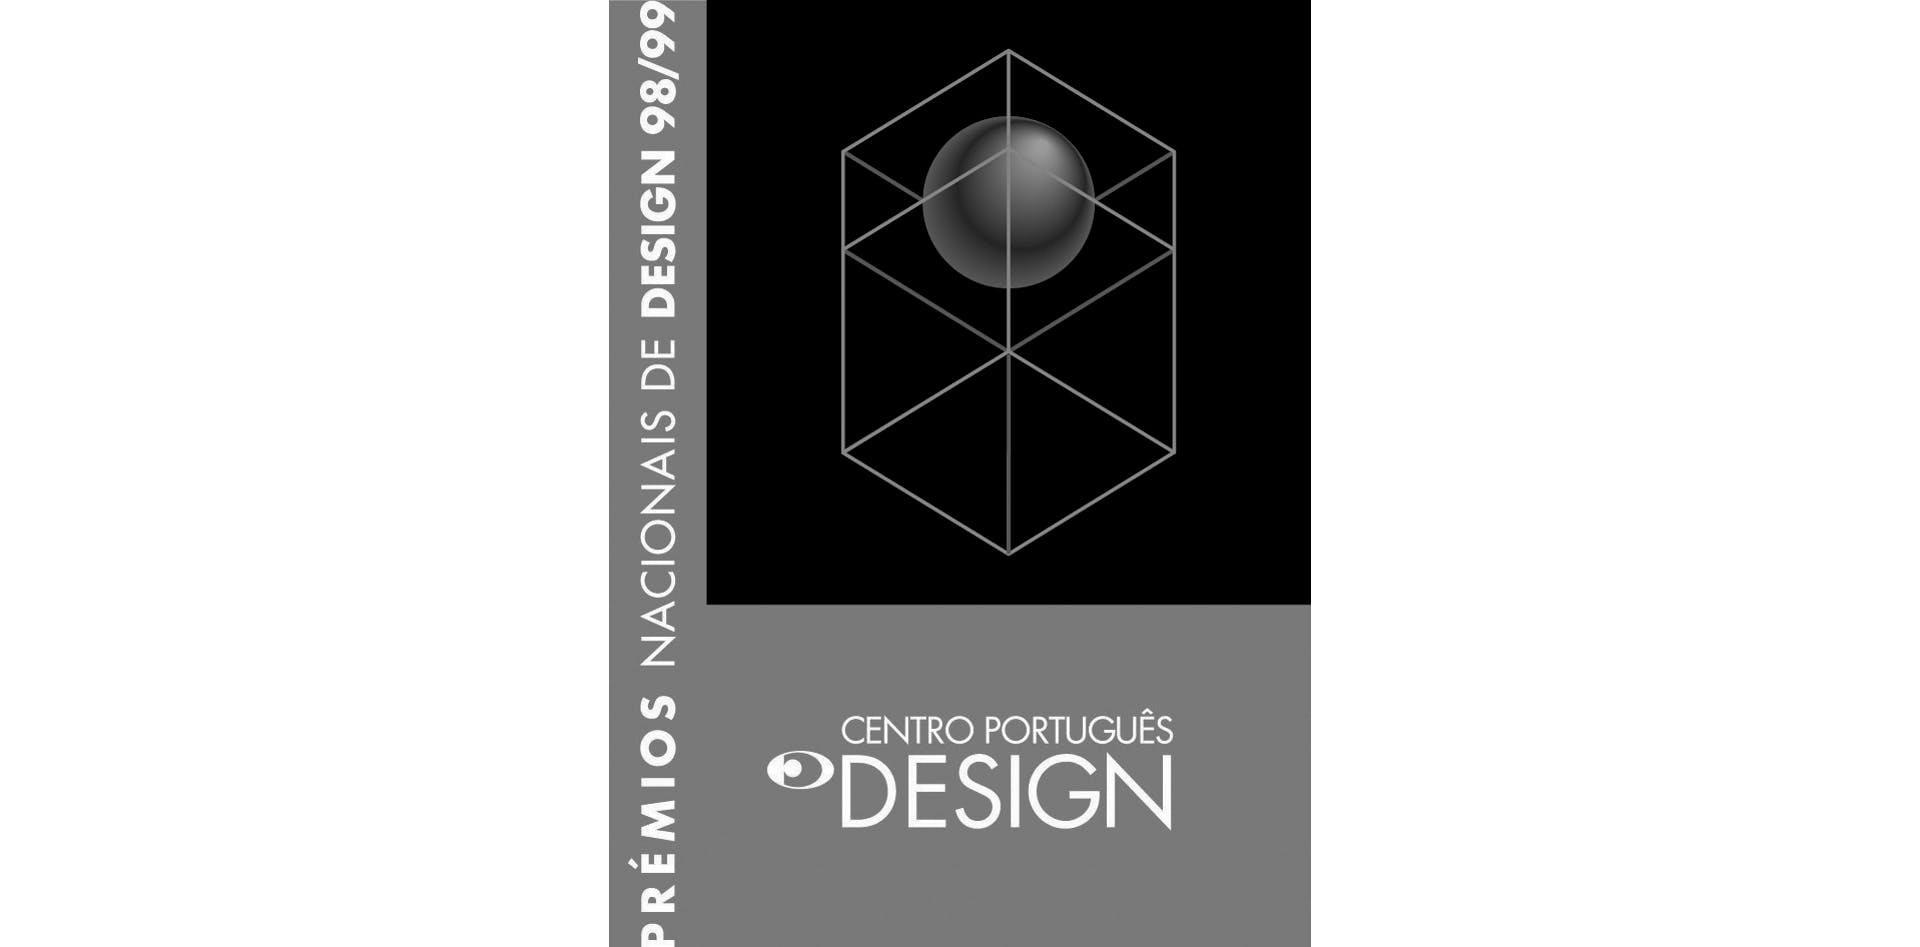 Global Design Management Award